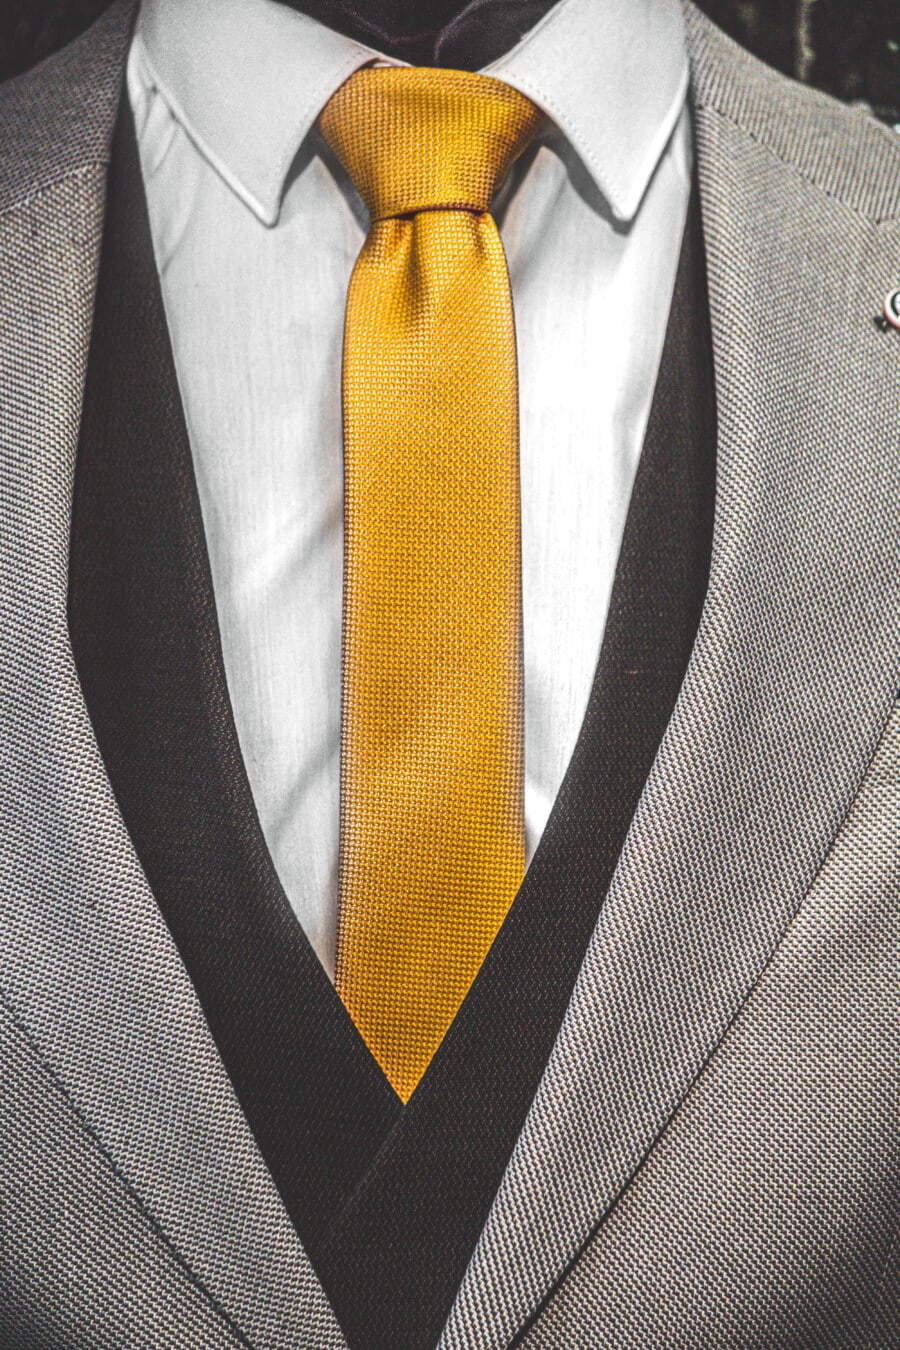 黄色, ネクタイ, タキシード, ジャケット, 黒と白, 繊維, 綿, 衣服, 実業家, スーツ